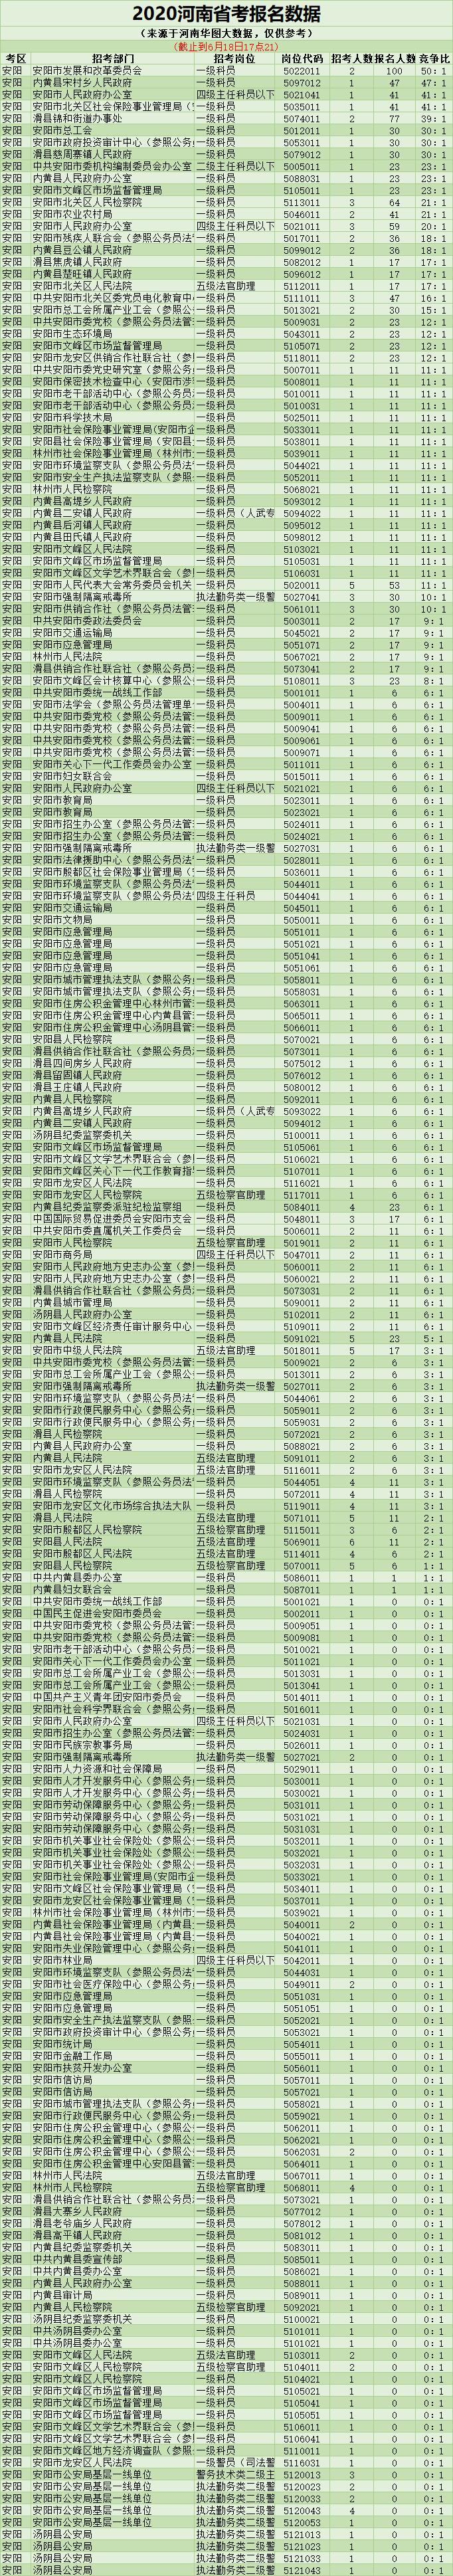 2020河南省考报名人数统计-安阳考区岗位竞争比(截止6月18日17:21)